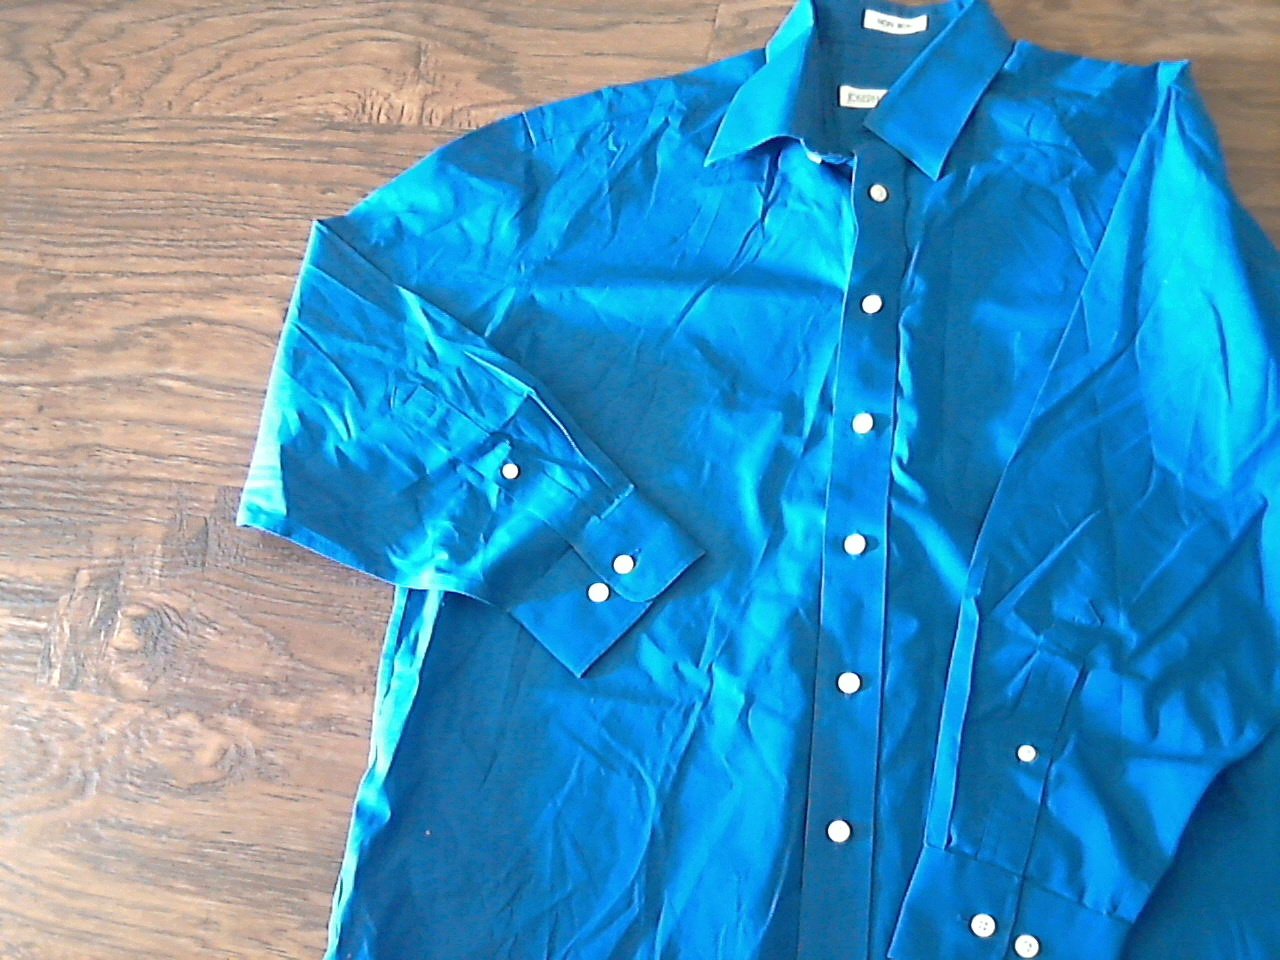 Joseph & Feiss man's blue long sleeve causal shirt size 32/33